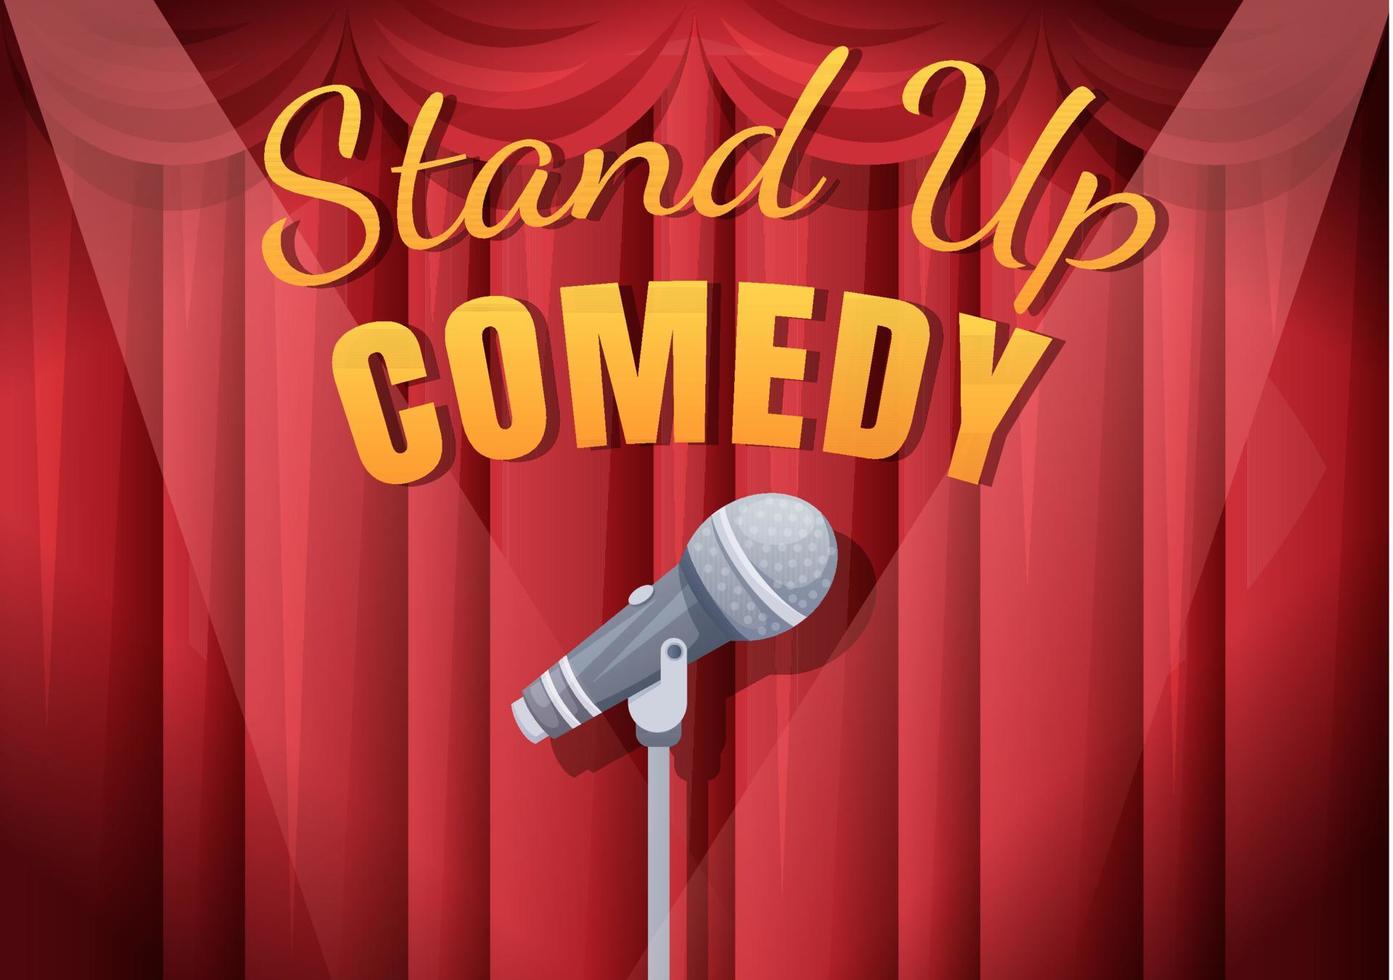 Stand-up-Comedy-Show-Theaterszene mit roten Vorhängen und offenem Mikrofon zum Komiker, der auf der Bühne in flacher Cartoon-Illustration auftritt vektor